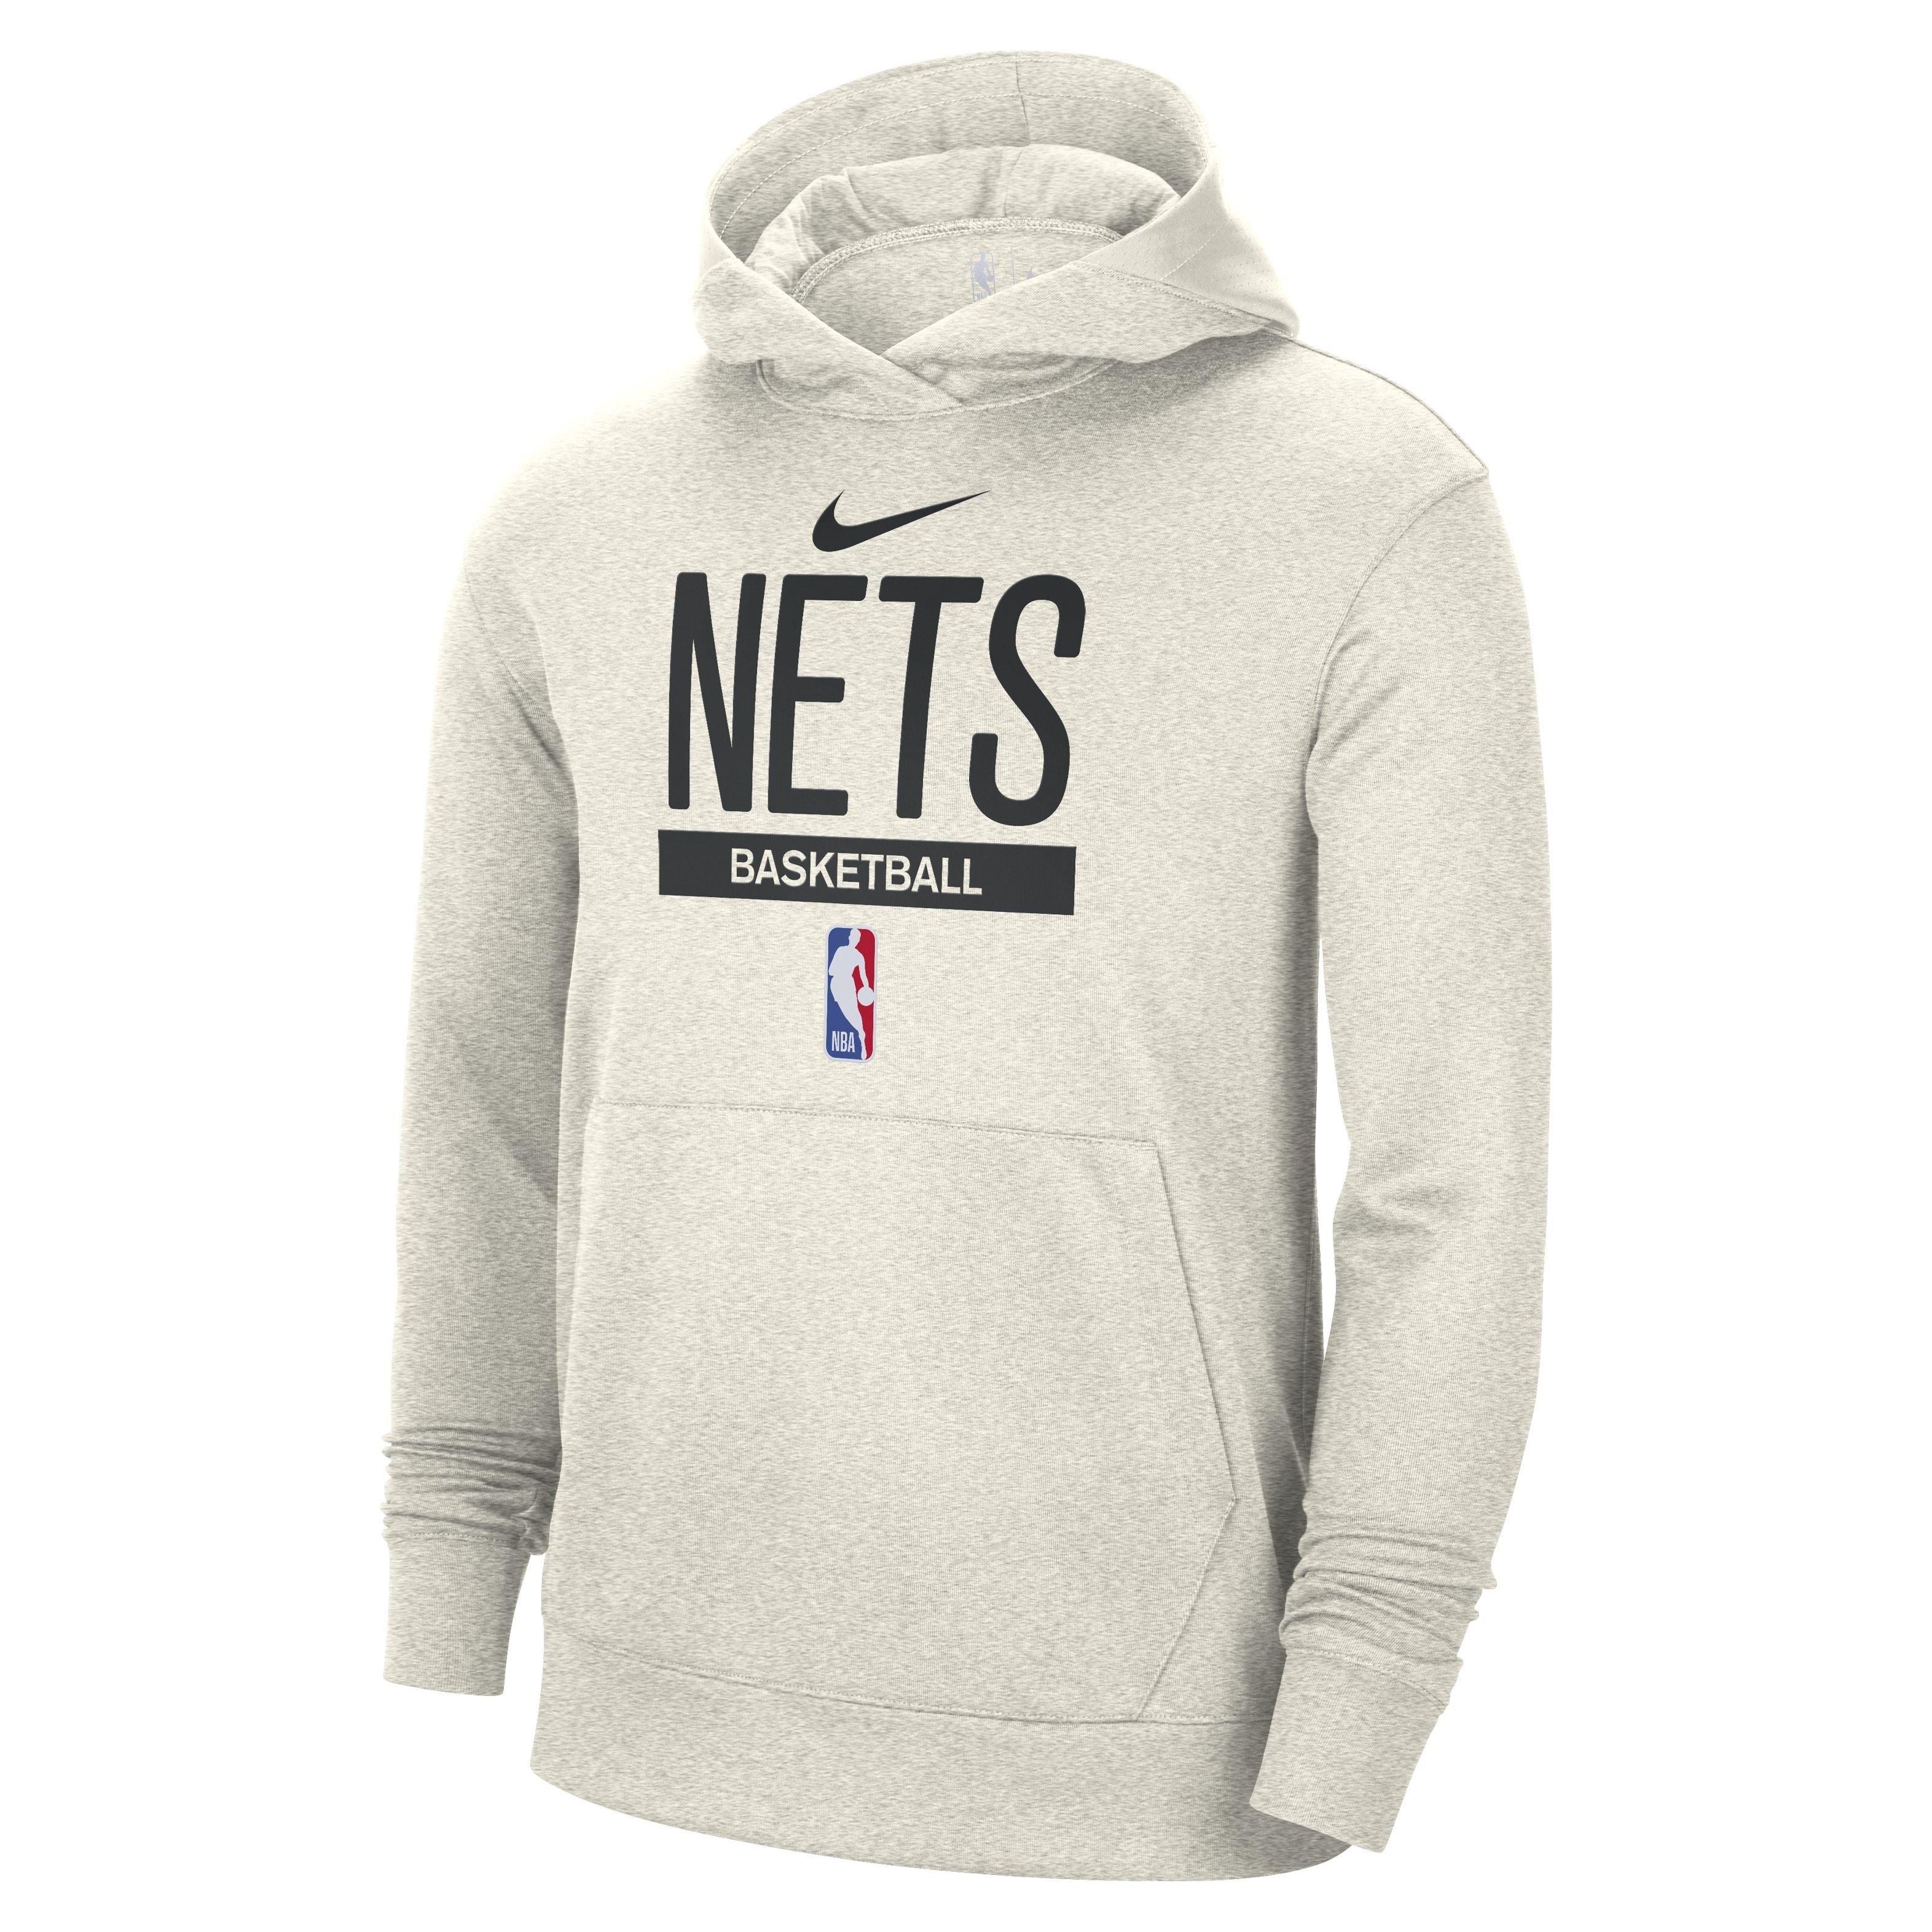 Men's Nike Brooklyn Nets Spotlight Pants